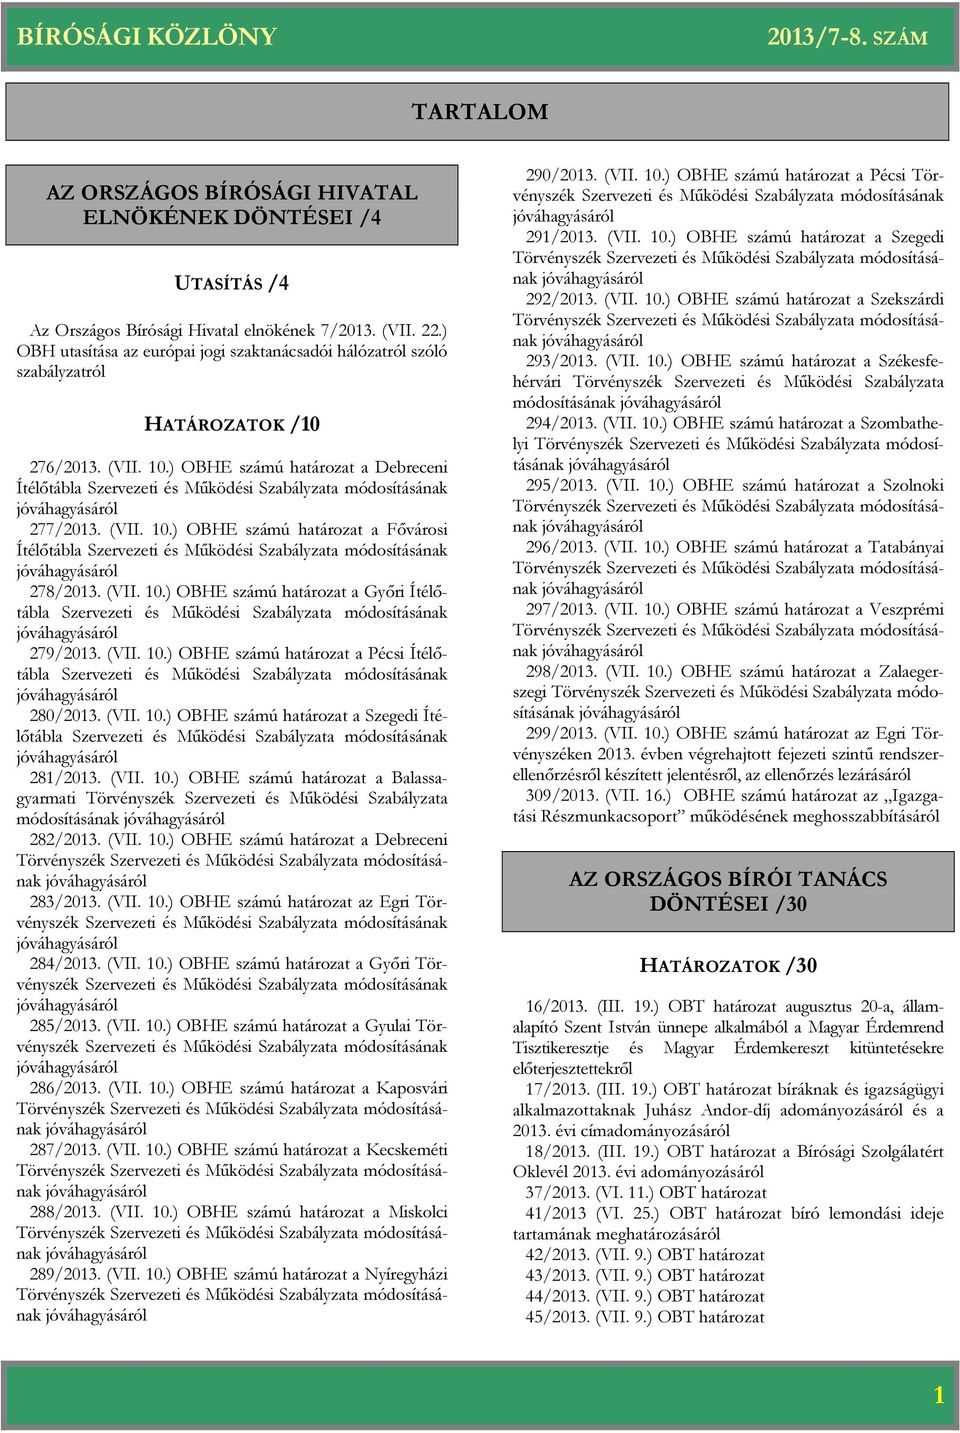 ) OBHE számú a Debreceni Ítélőtábla Szervezeti és Működési Szabályzata módosításának jóváhagyásáról 277/2013. (VII. 10.